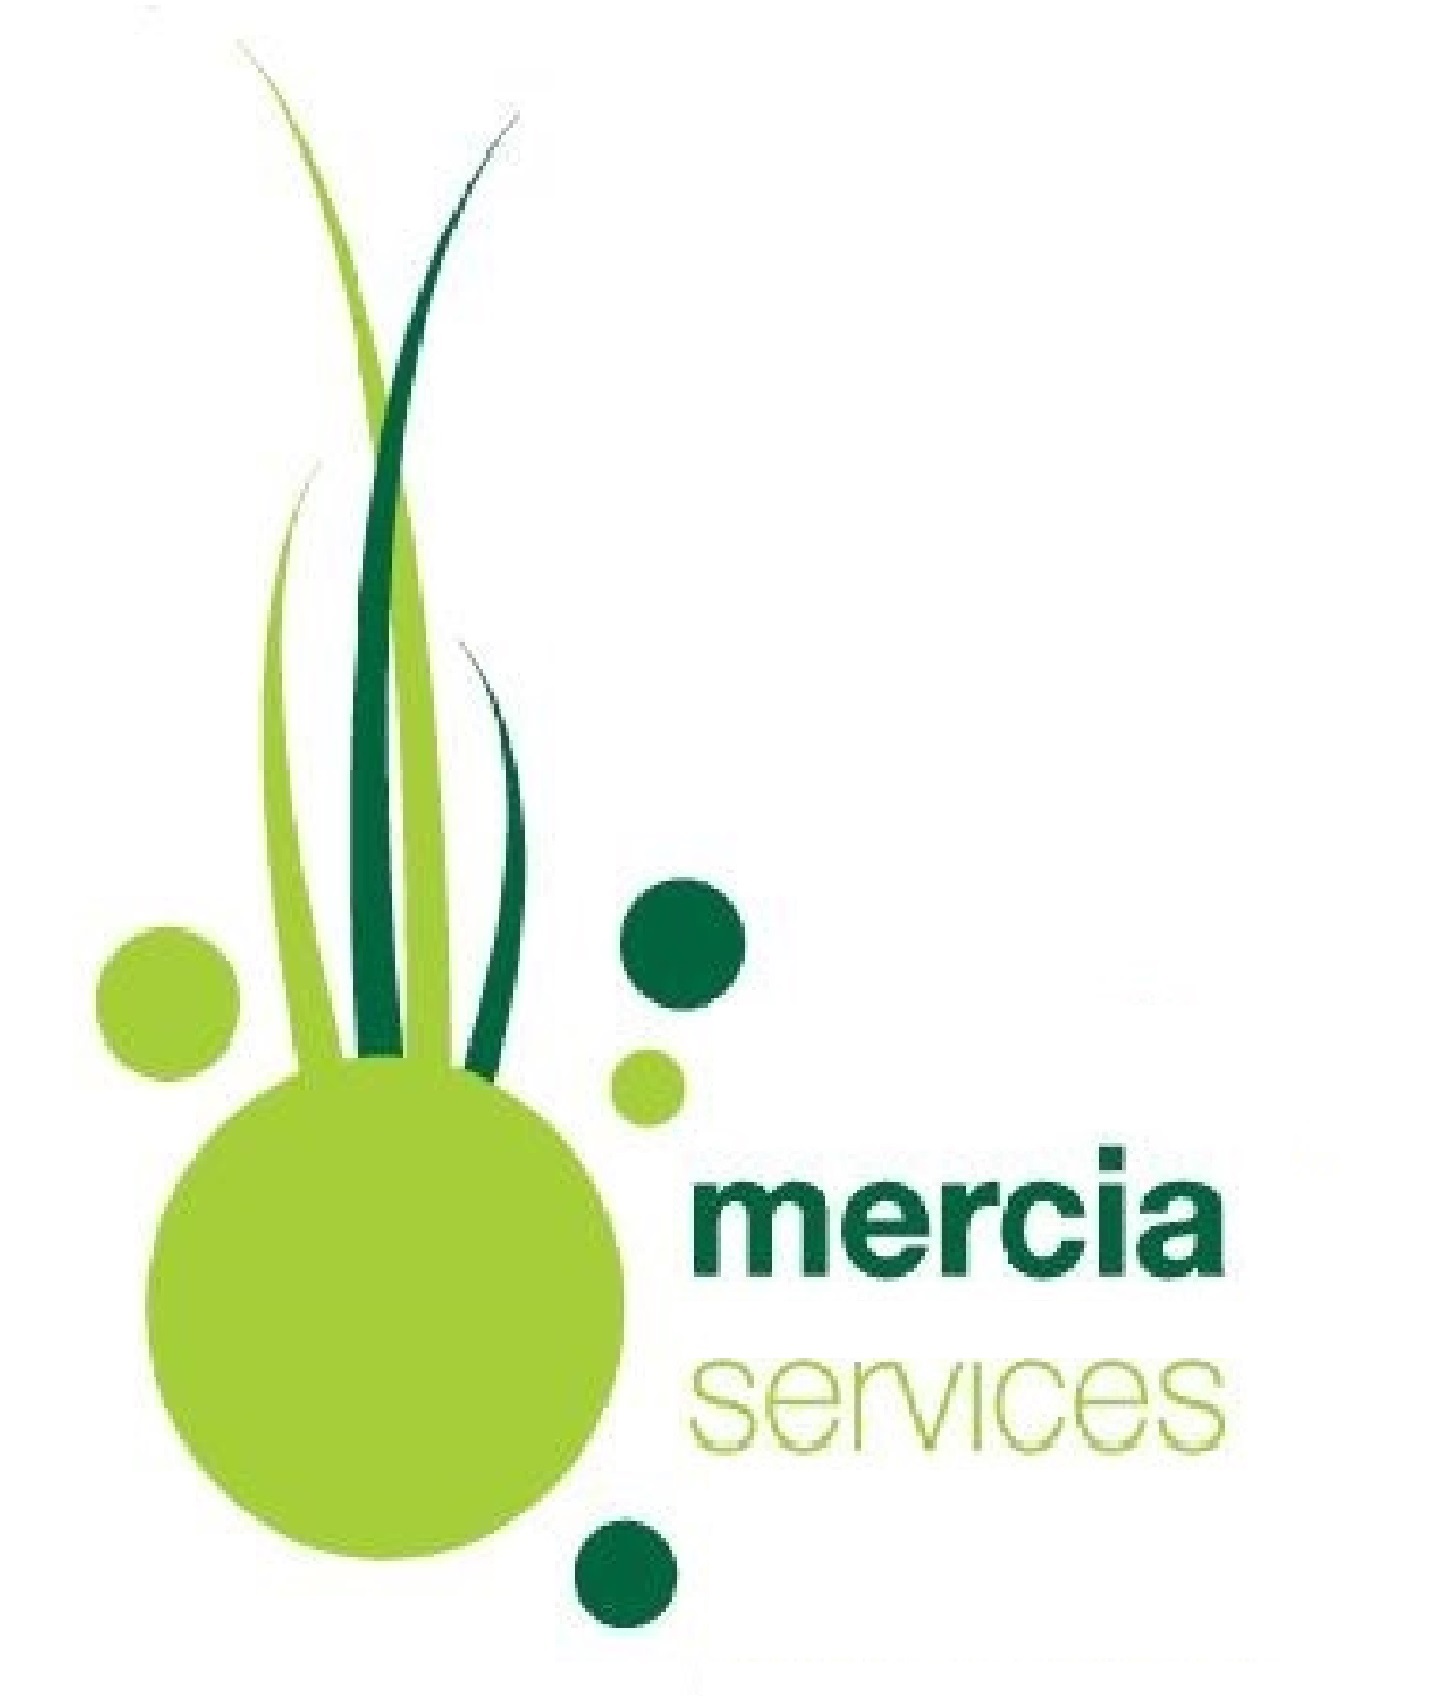 Mercia Services